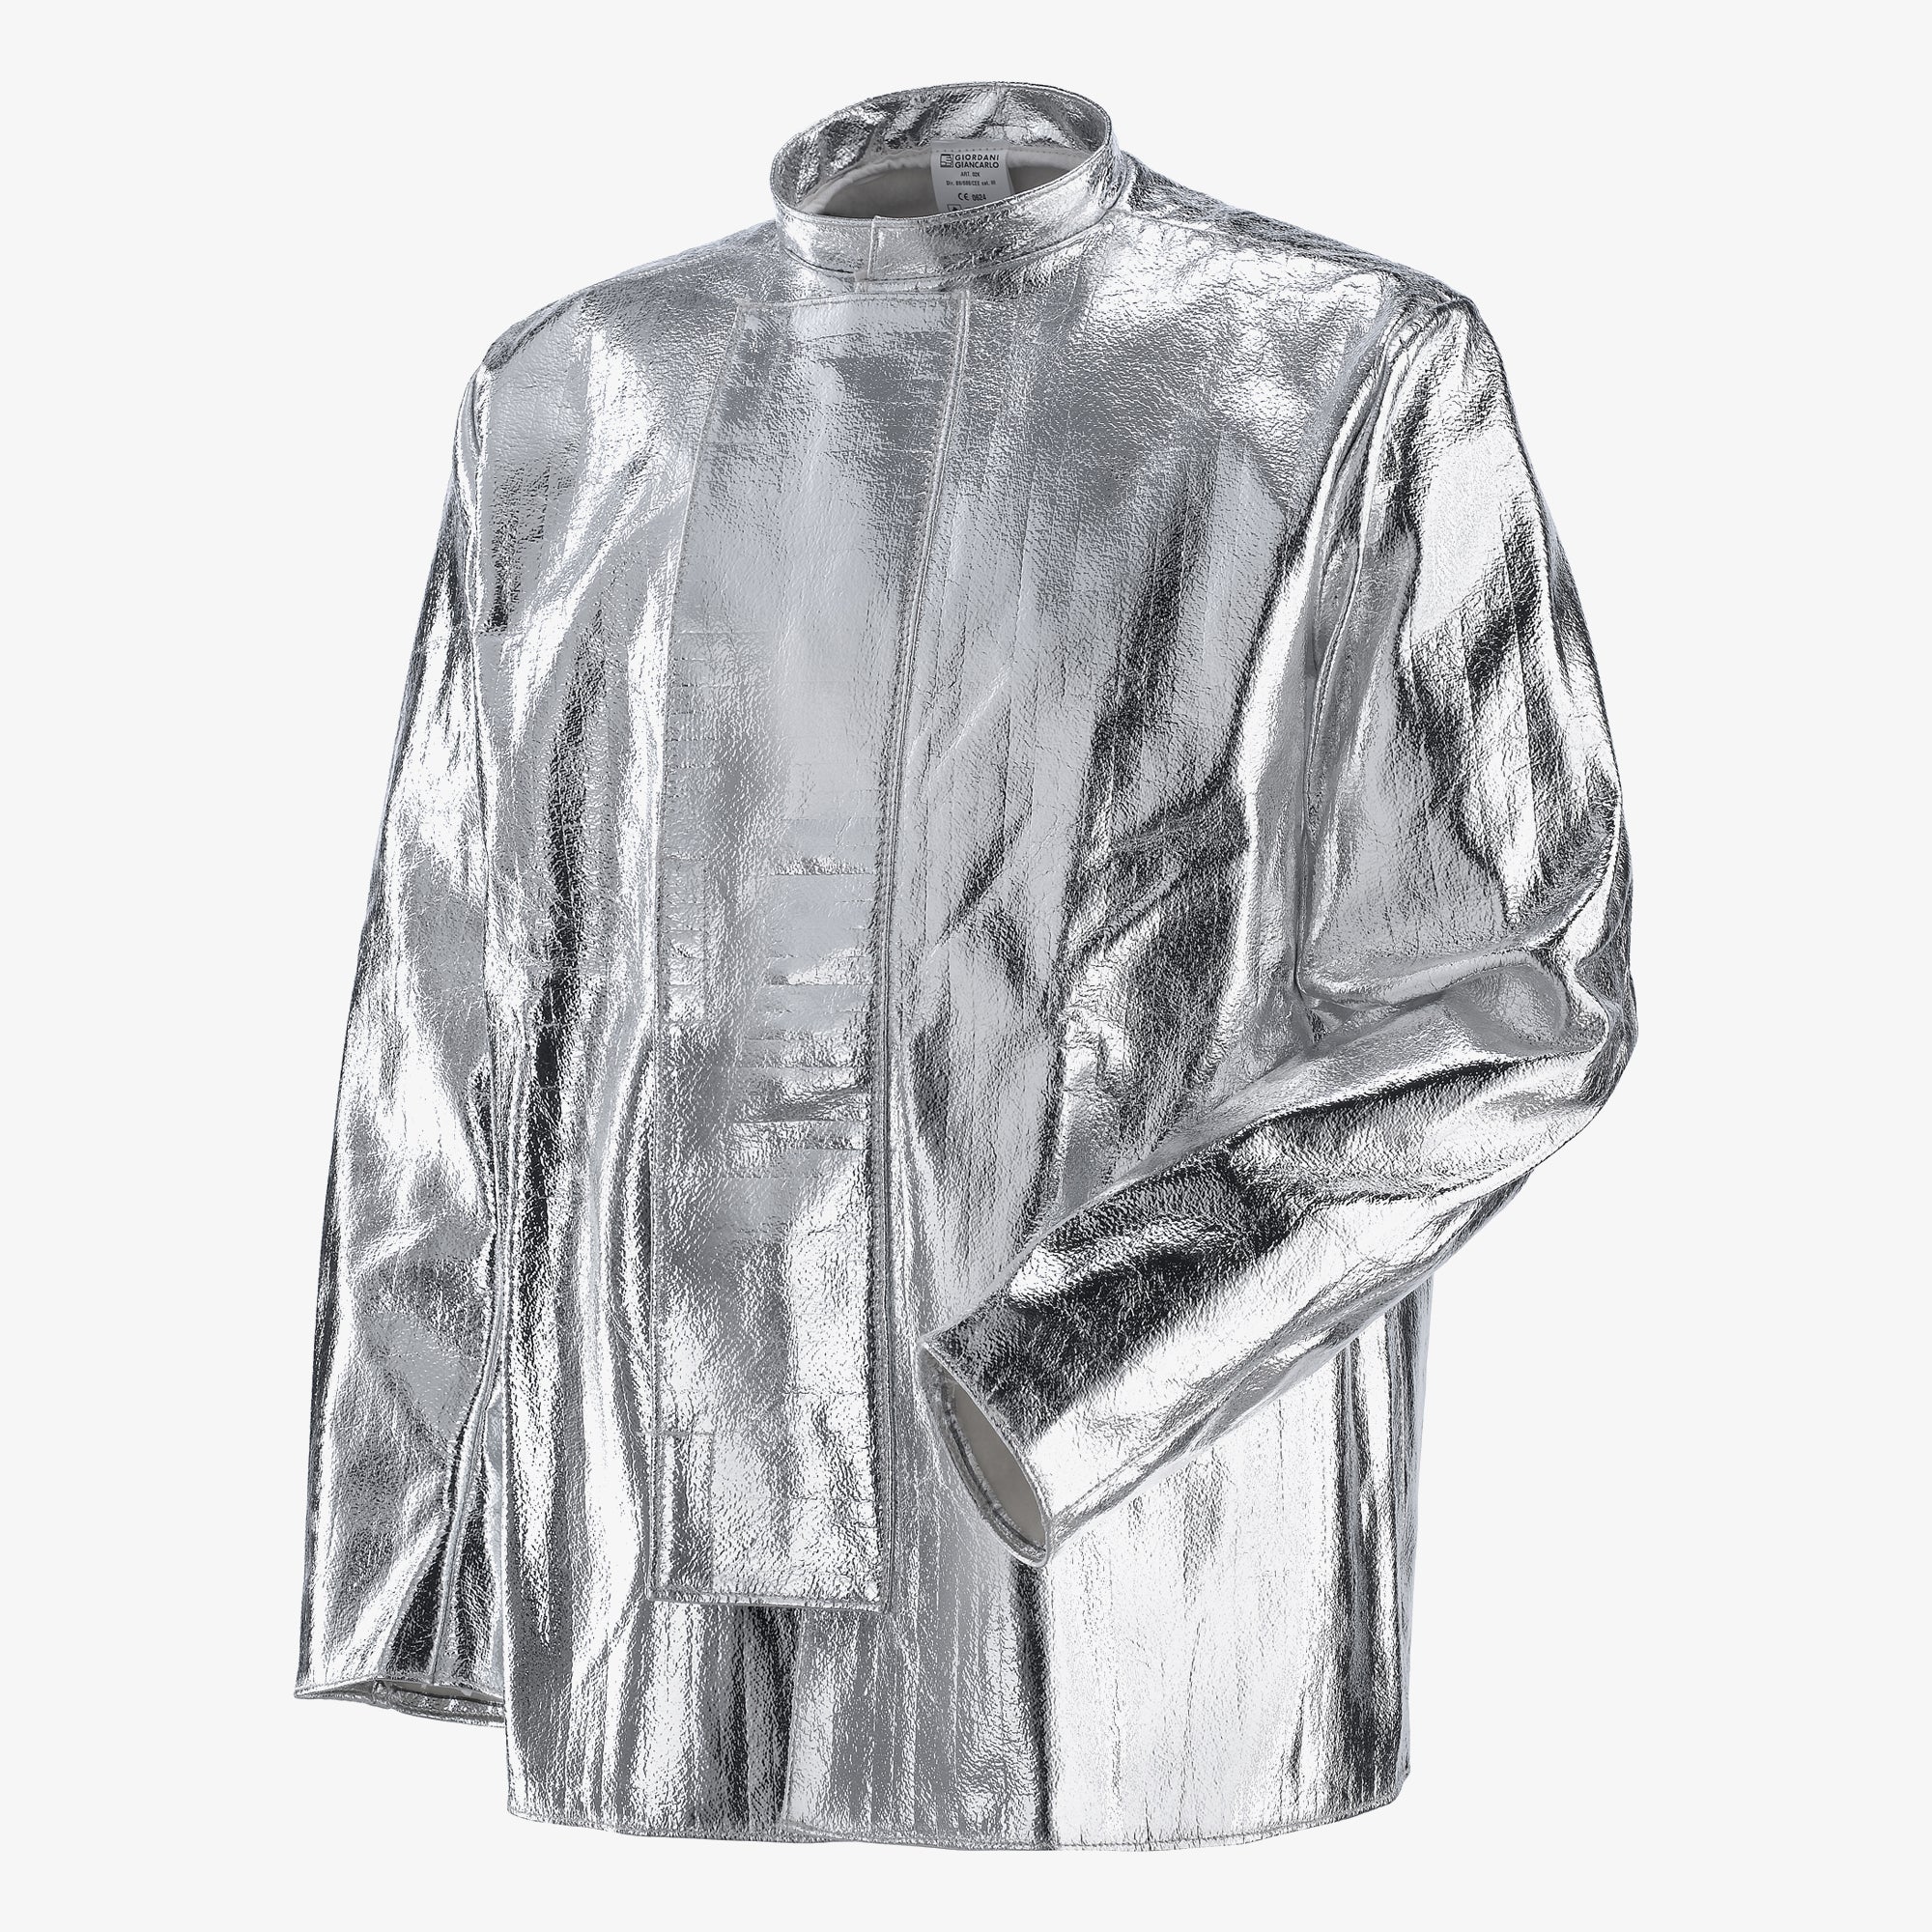 GIACCA ALL C3 jakna sa aluminijskim završnim slojem